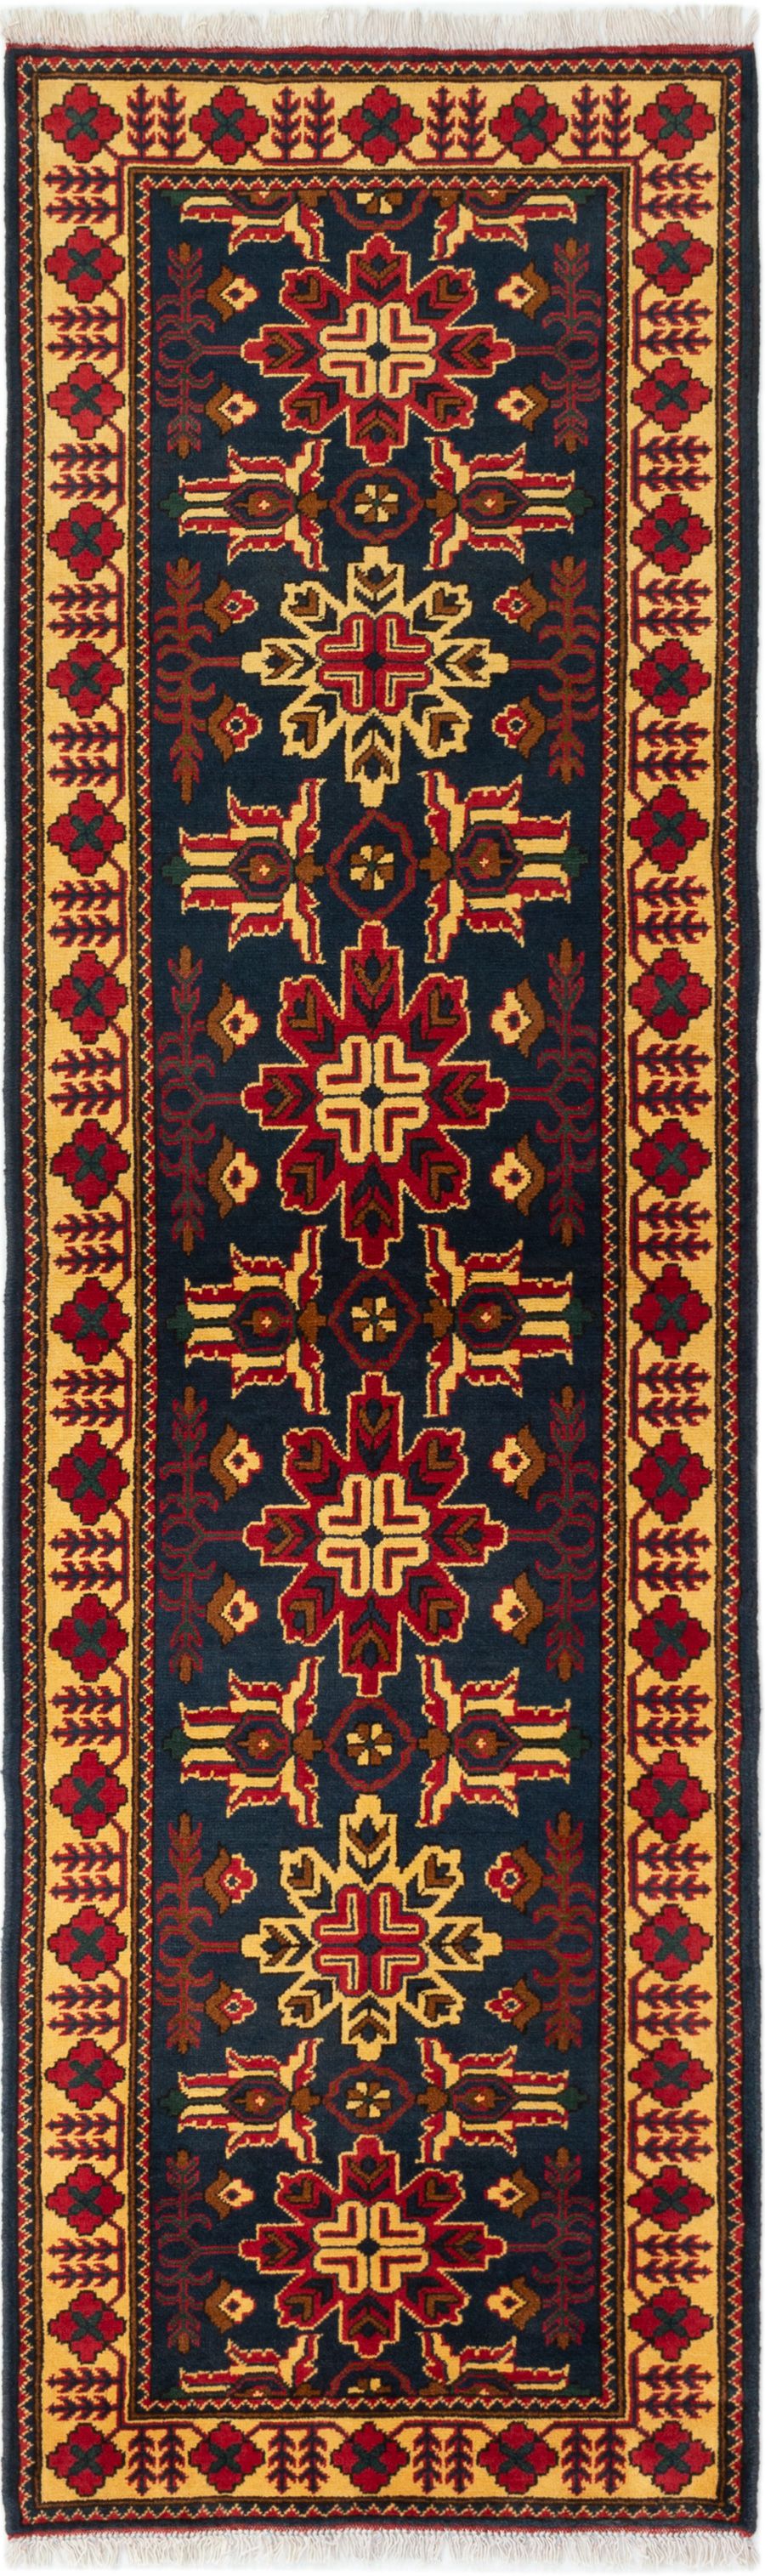 Hand-knotted Finest Kargahi Dark Navy Wool Rug 2'9" x 9'5" Size: 2'9" x 9'5"  